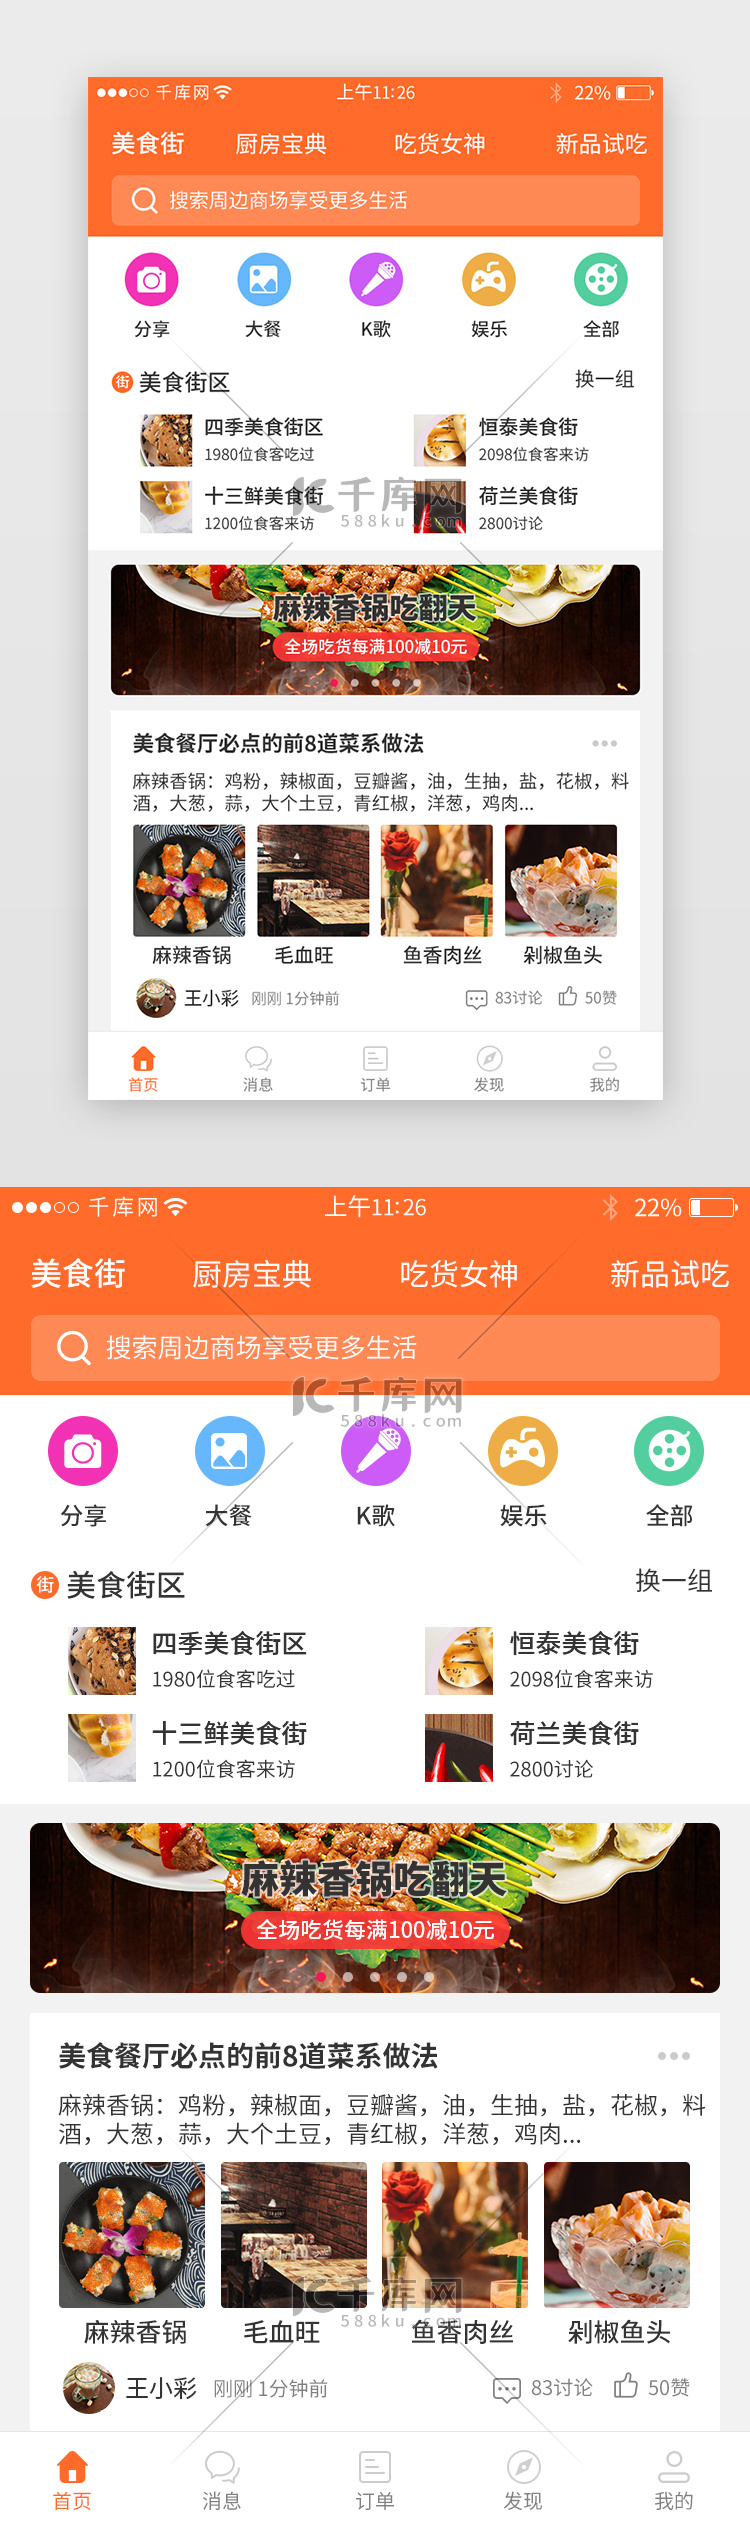 橙色系美食app界面设计